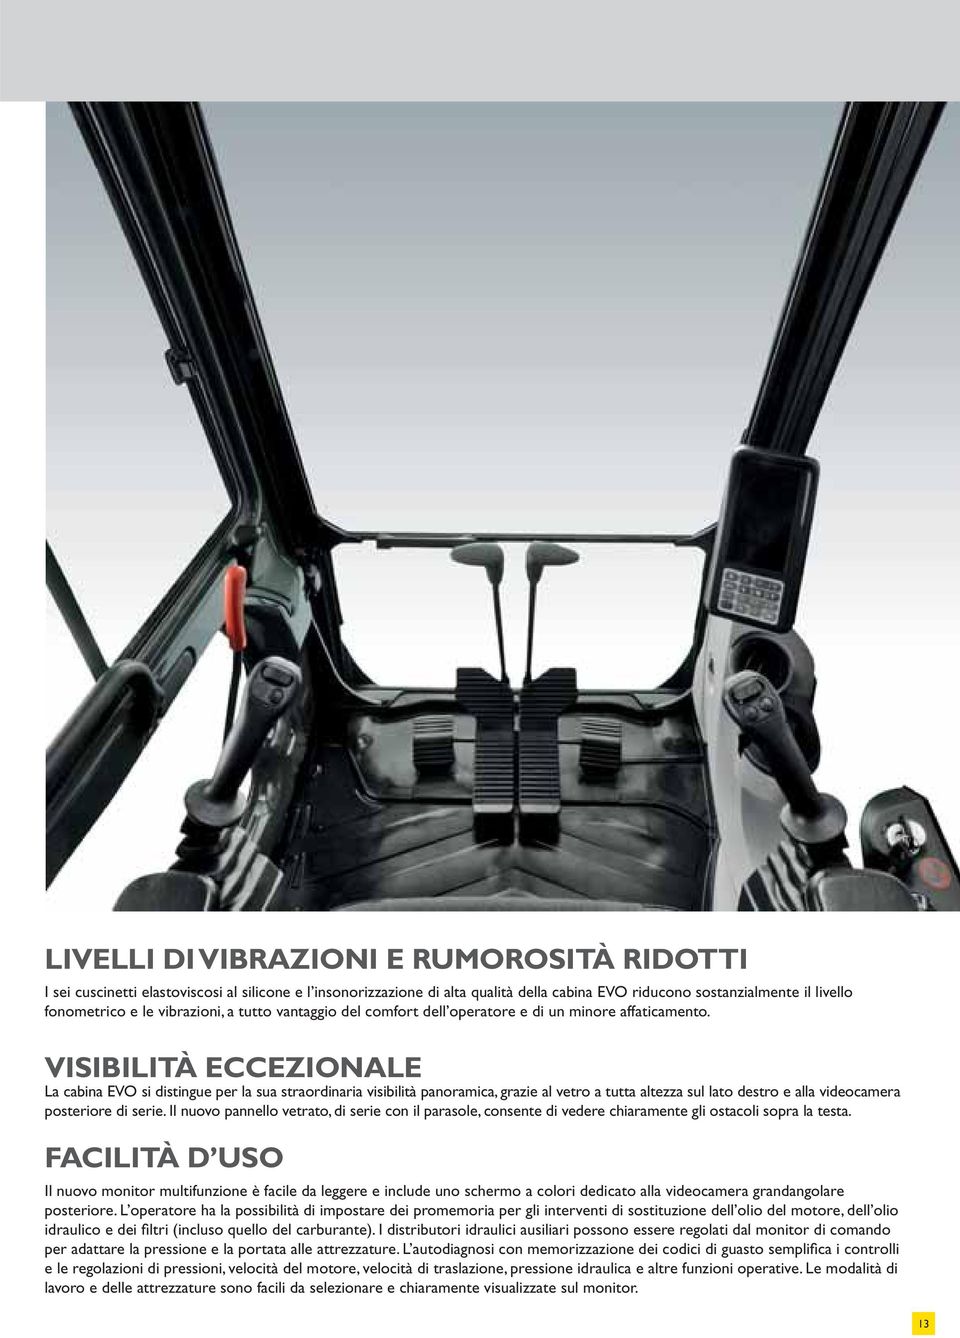 VISIBILITÀ ECCEZIONALE La cabina EVO si distingue per la sua straordinaria visibilità panoramica, grazie al vetro a tutta altezza sul lato destro e alla videocamera posteriore di serie.